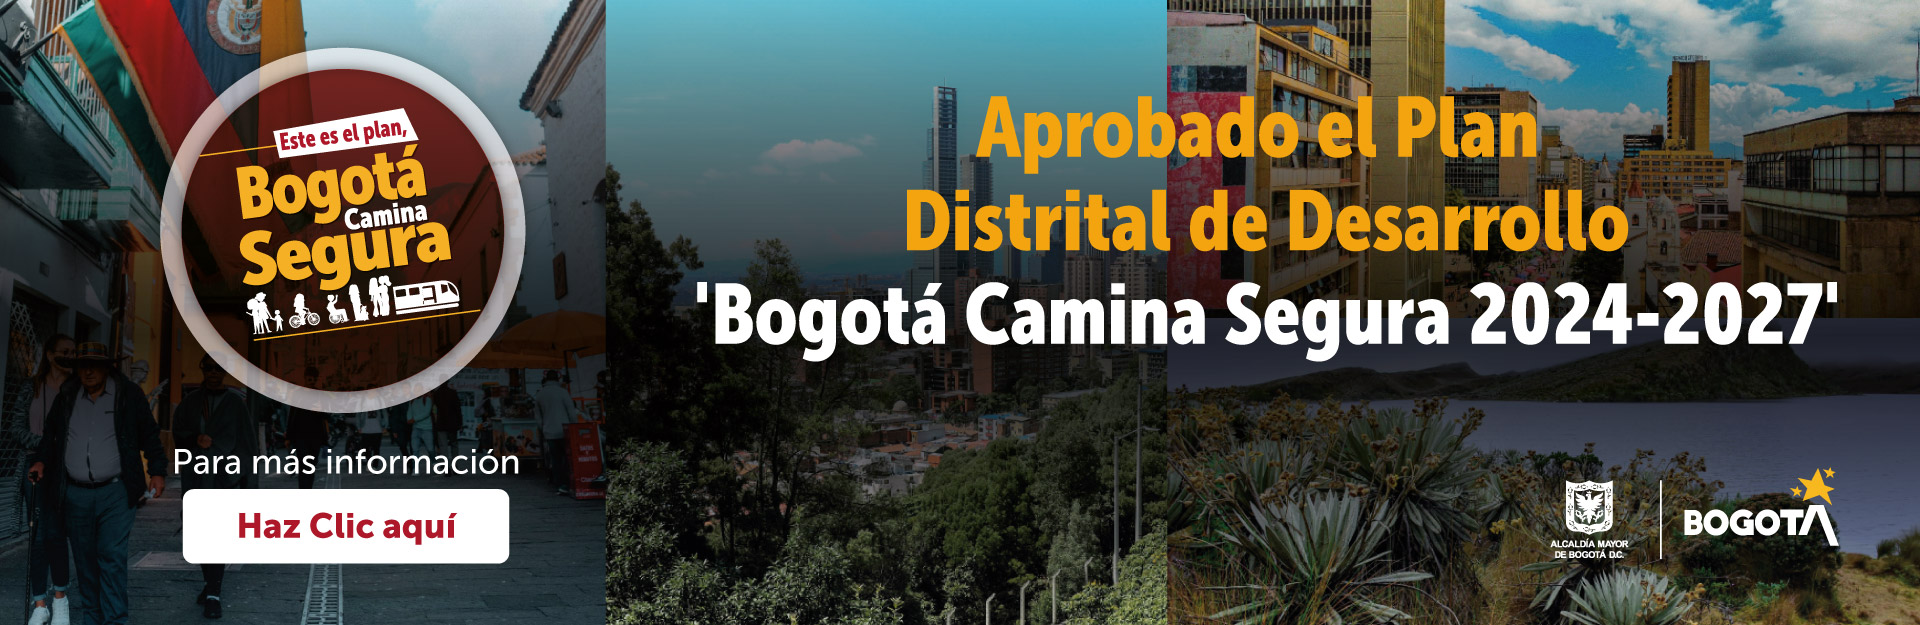 Aprobado el Plan Distrital de Desarrollo Bogotá Camina Segura 2024 - 2027